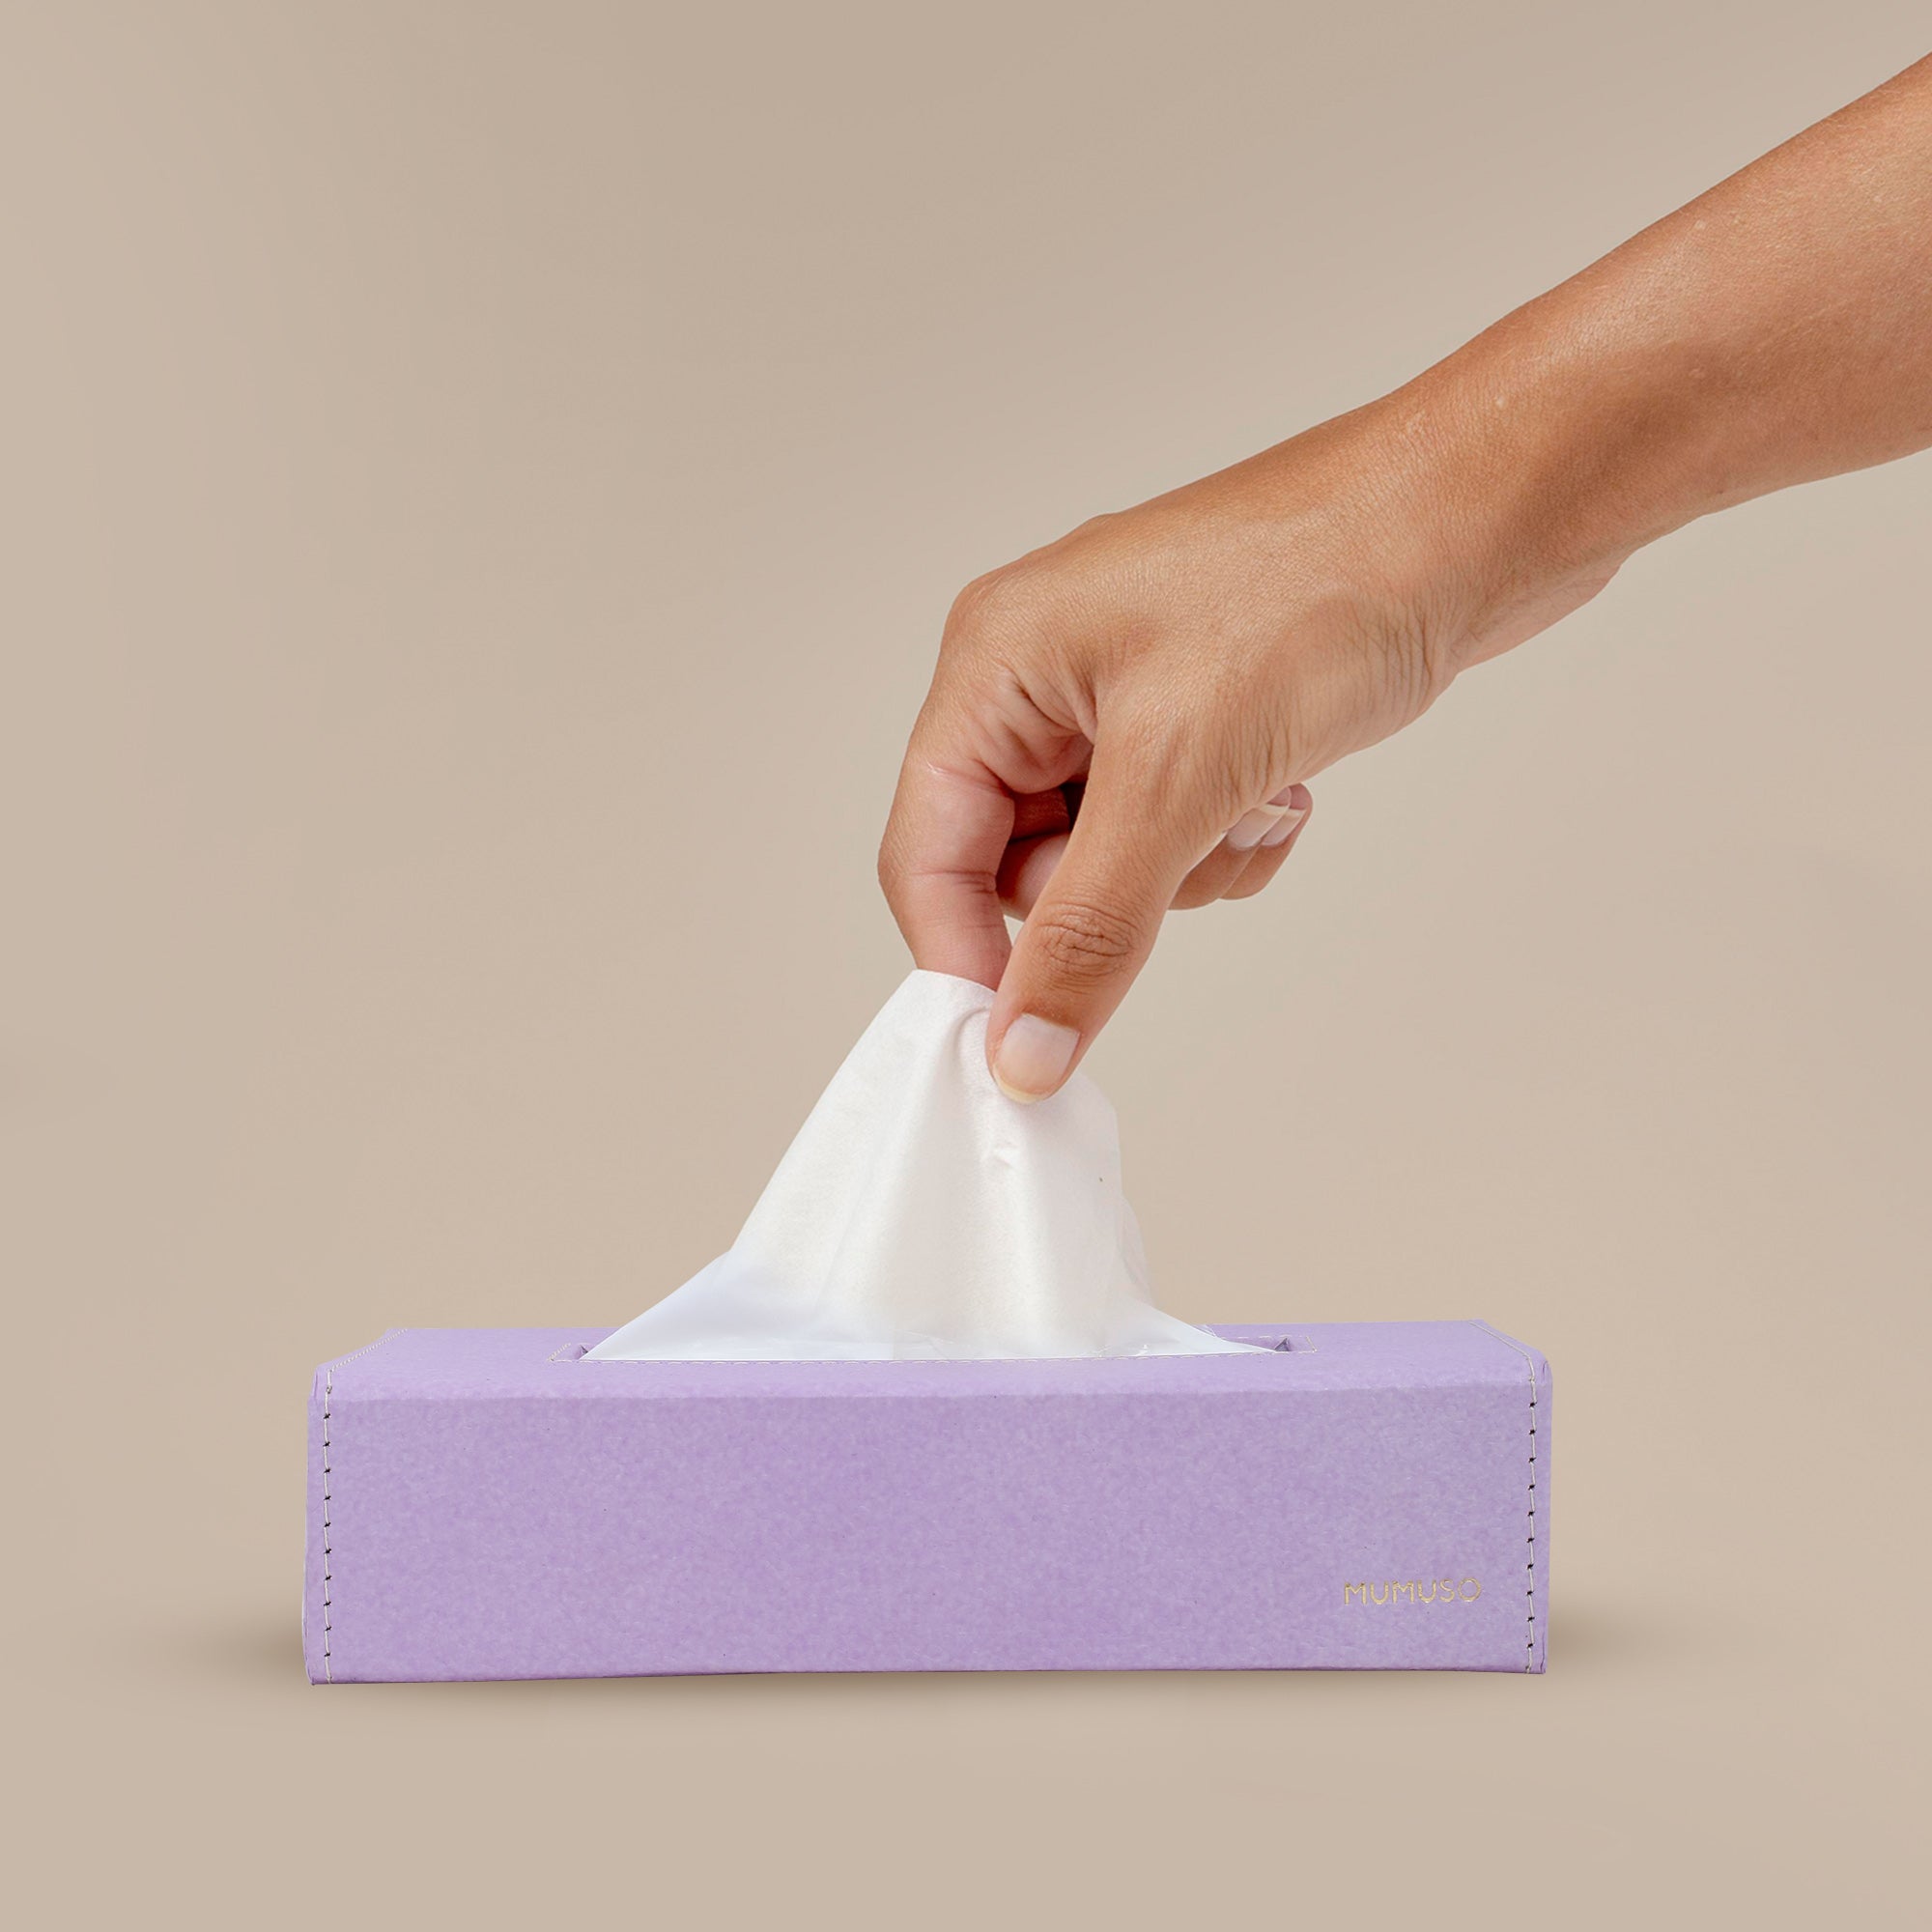 Buy Tissue Box Holder Online Starting at ₹1,329